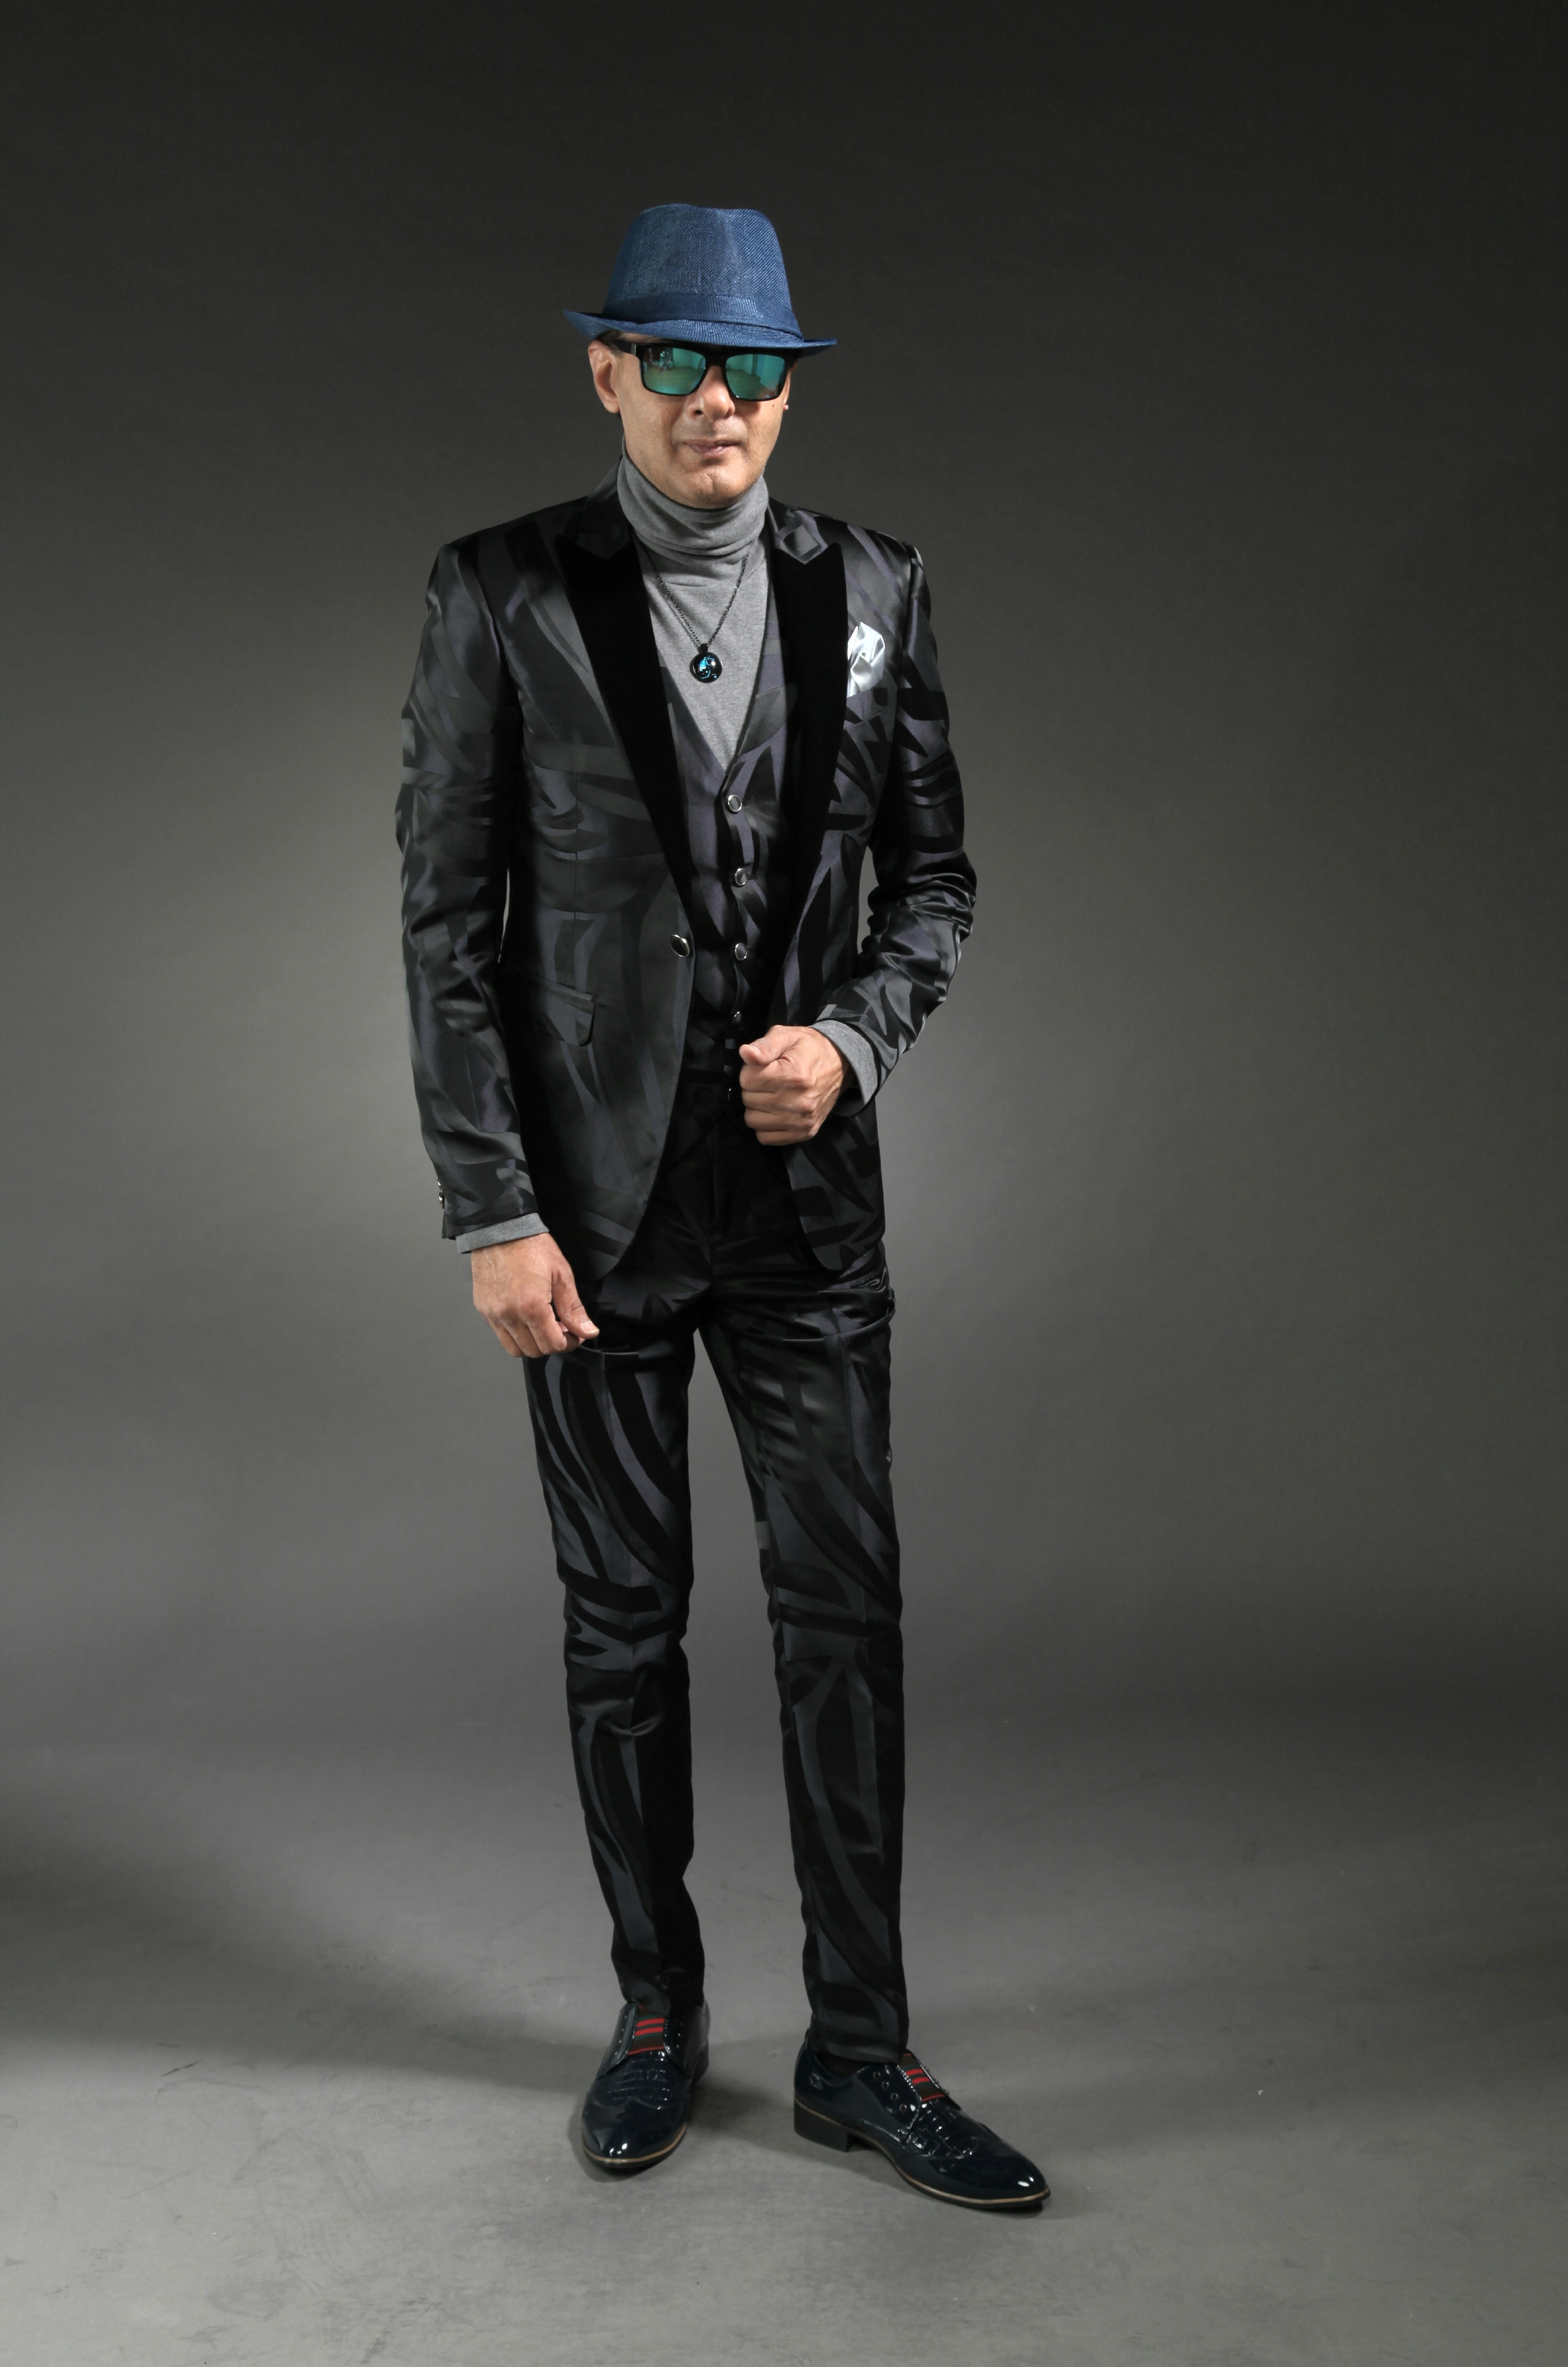 Mst 5010 01 Rent Rental Hire Tuxedo Suit Black Tie Suit Designer Suits Shop Tailor Tailors Singapore Wedding